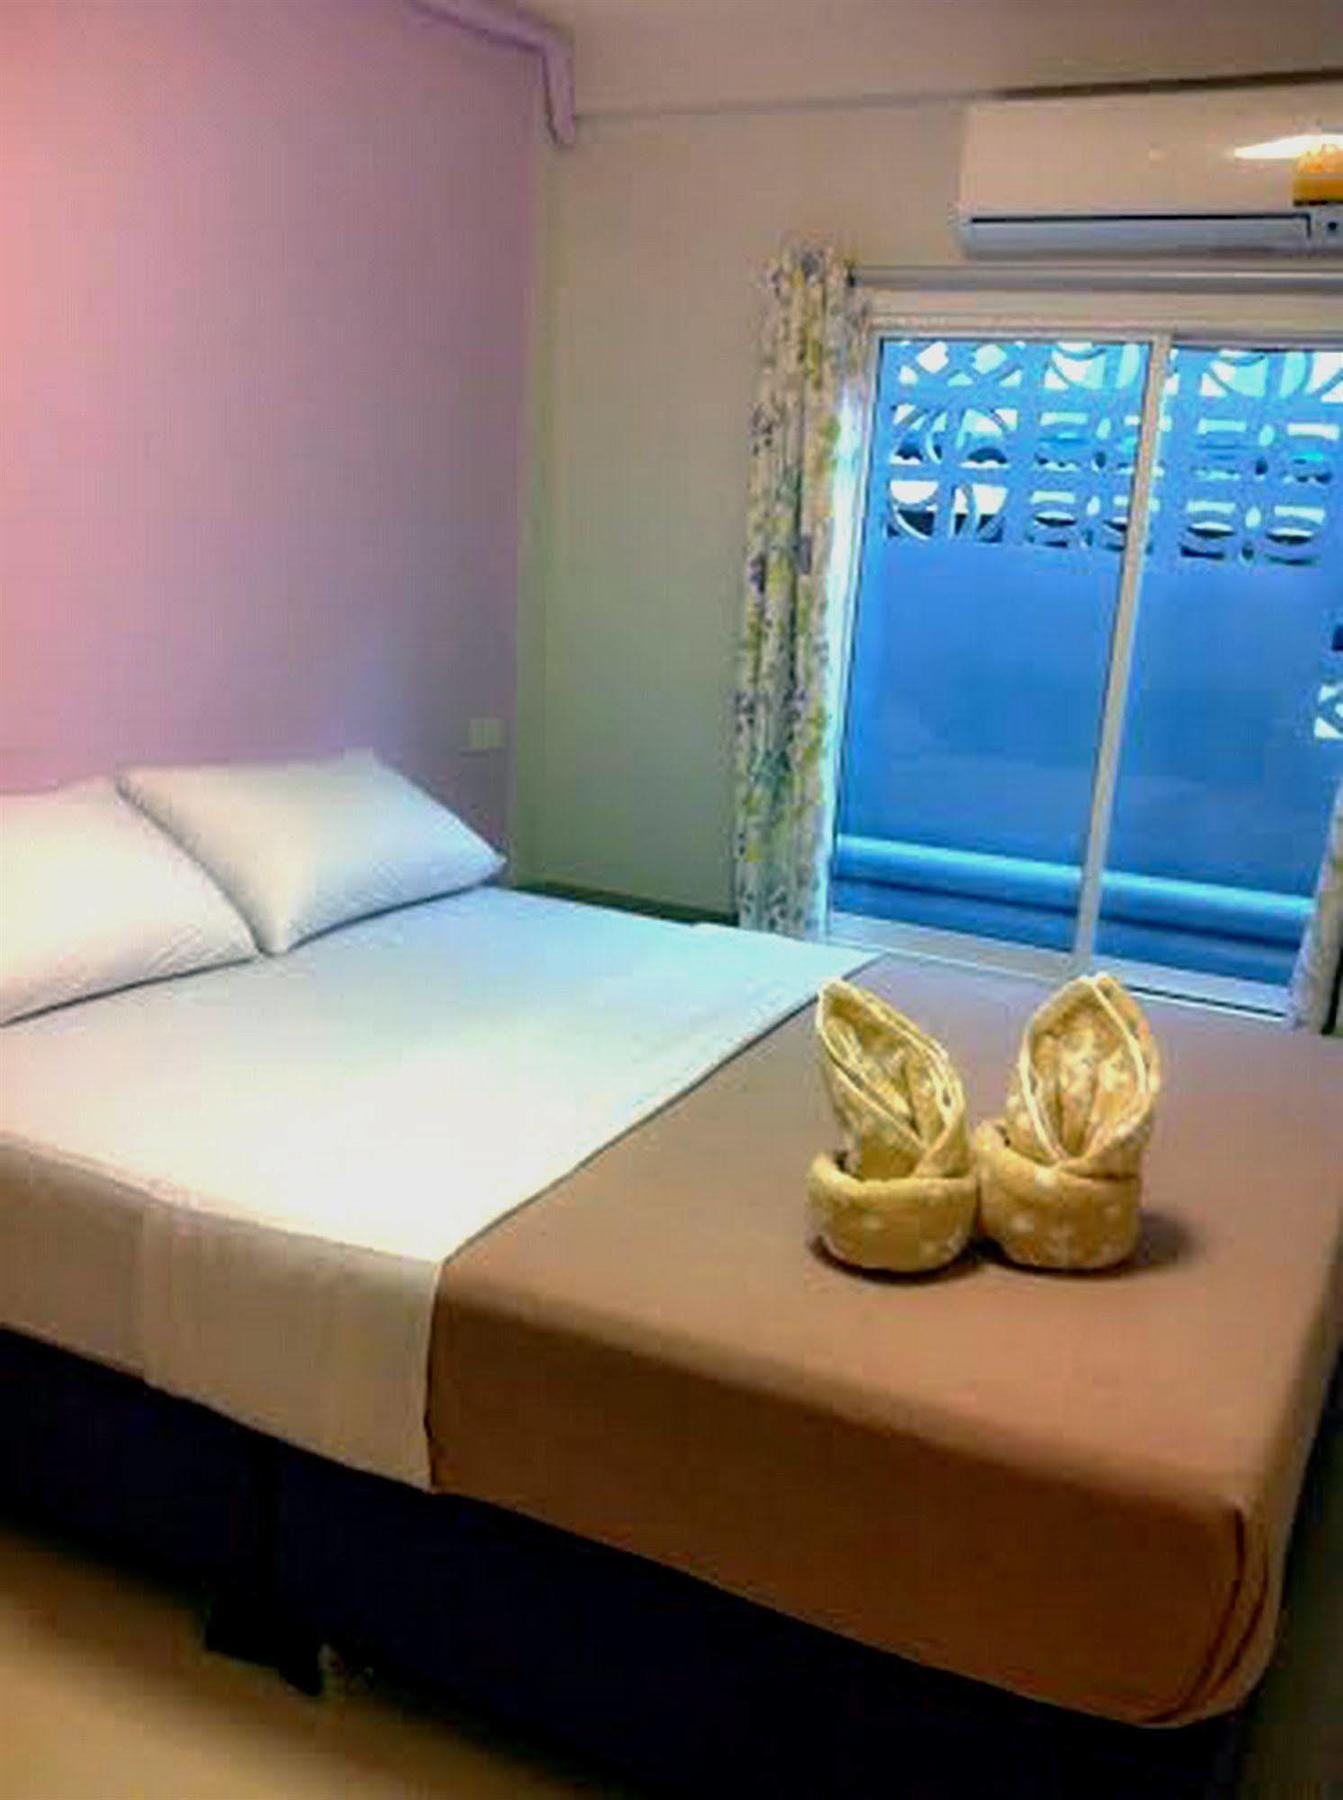 Sidare Bed And Breakfast Бангкок Экстерьер фото